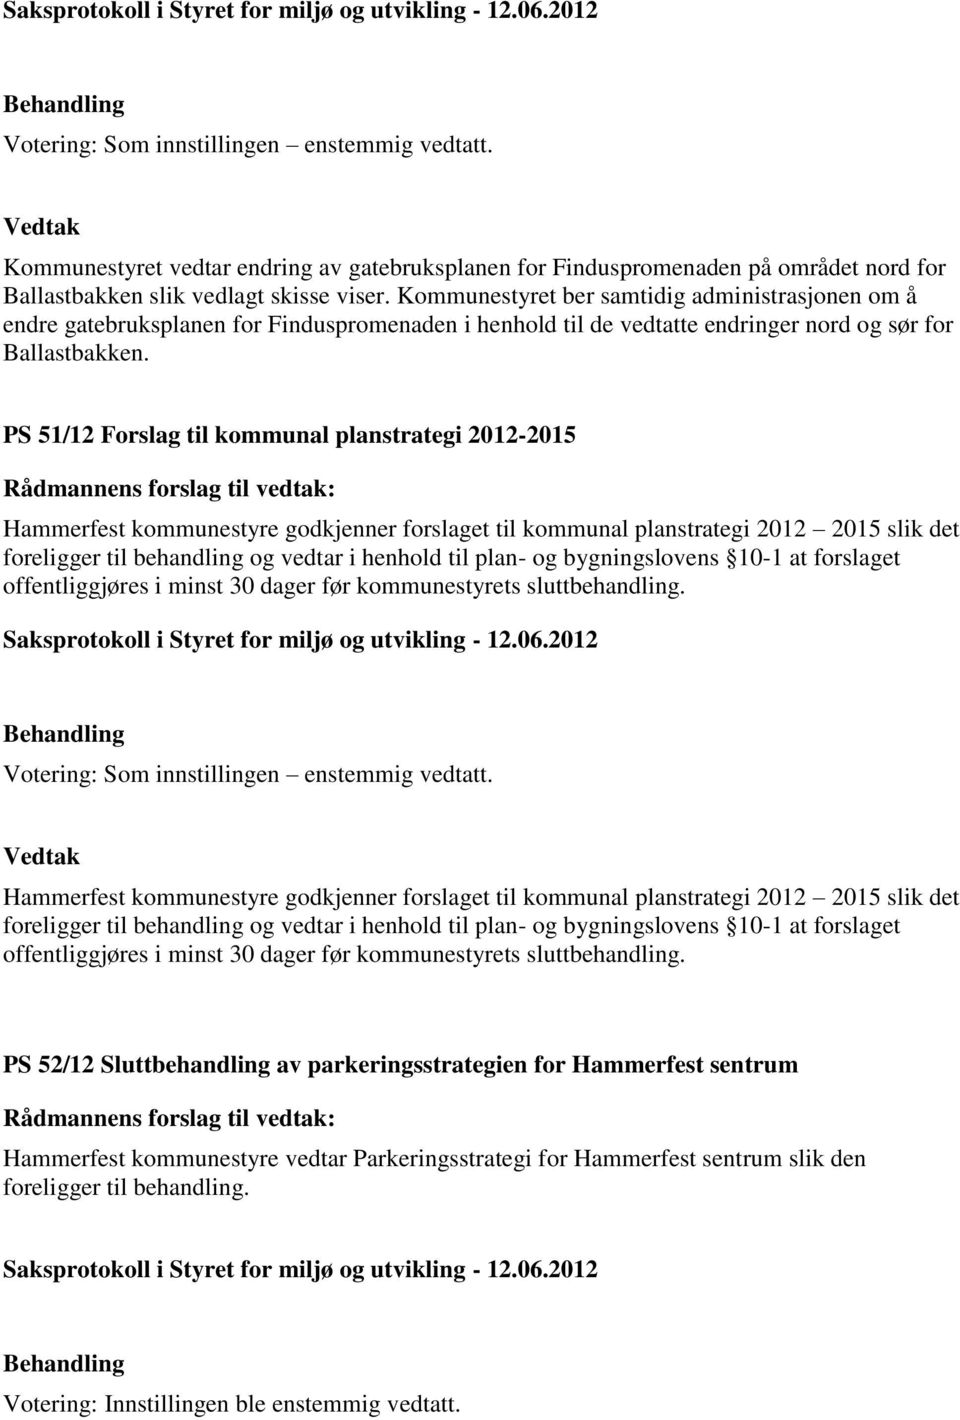 PS 51/12 Forslag til kommunal planstrategi 2012-2015 Hammerfest kommunestyre godkjenner forslaget til kommunal planstrategi 2012 2015 slik det foreligger til behandling og vedtar i henhold til plan-